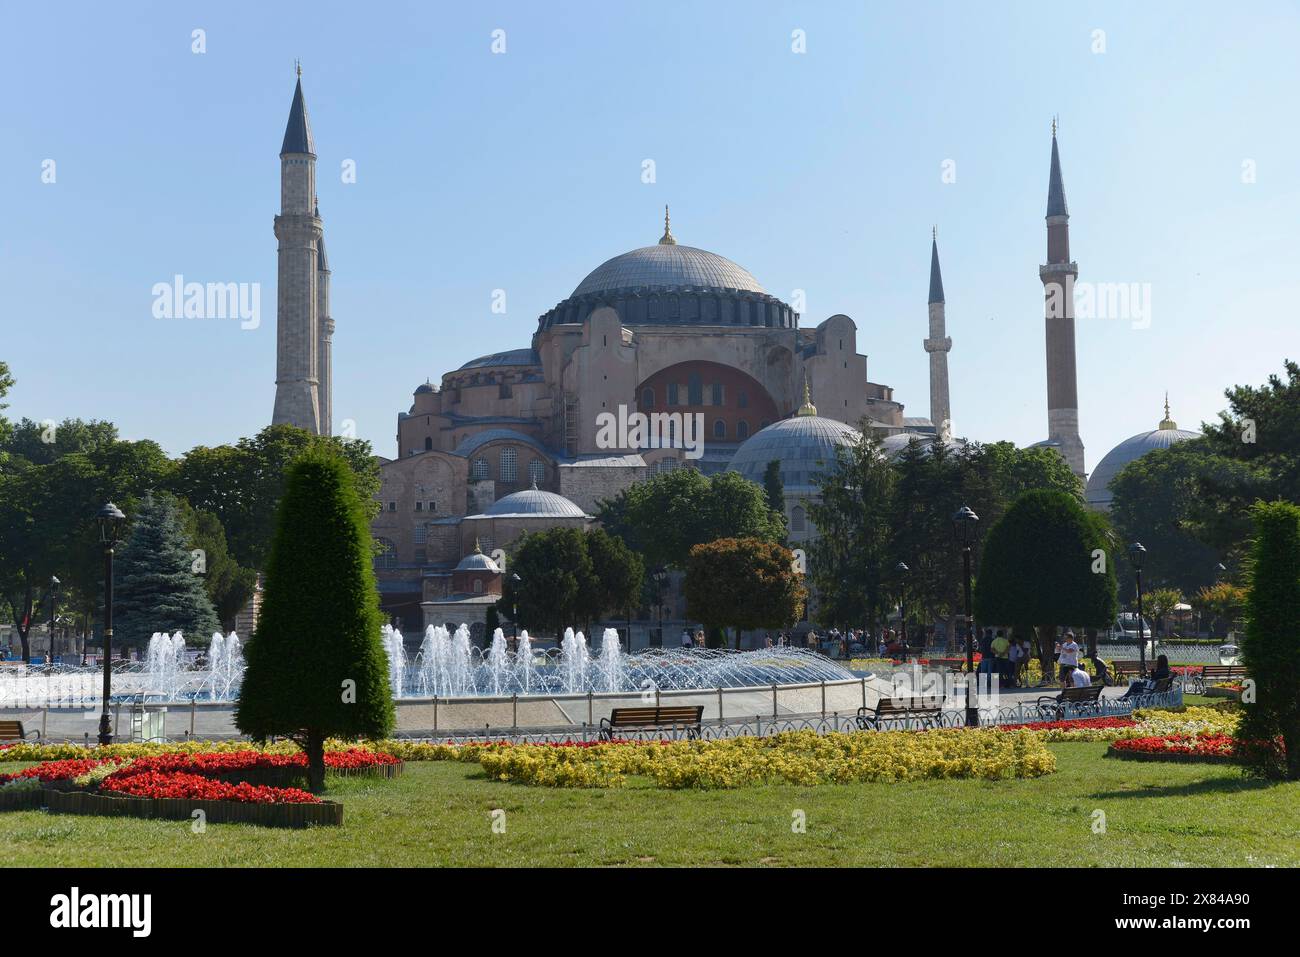 Sainte-Sophie, monument mondialement connu de l'architecture byzantine, vue panoramique d'une mosquée avec jardin, fontaine et minarets, Istanbul, Istanbul Banque D'Images